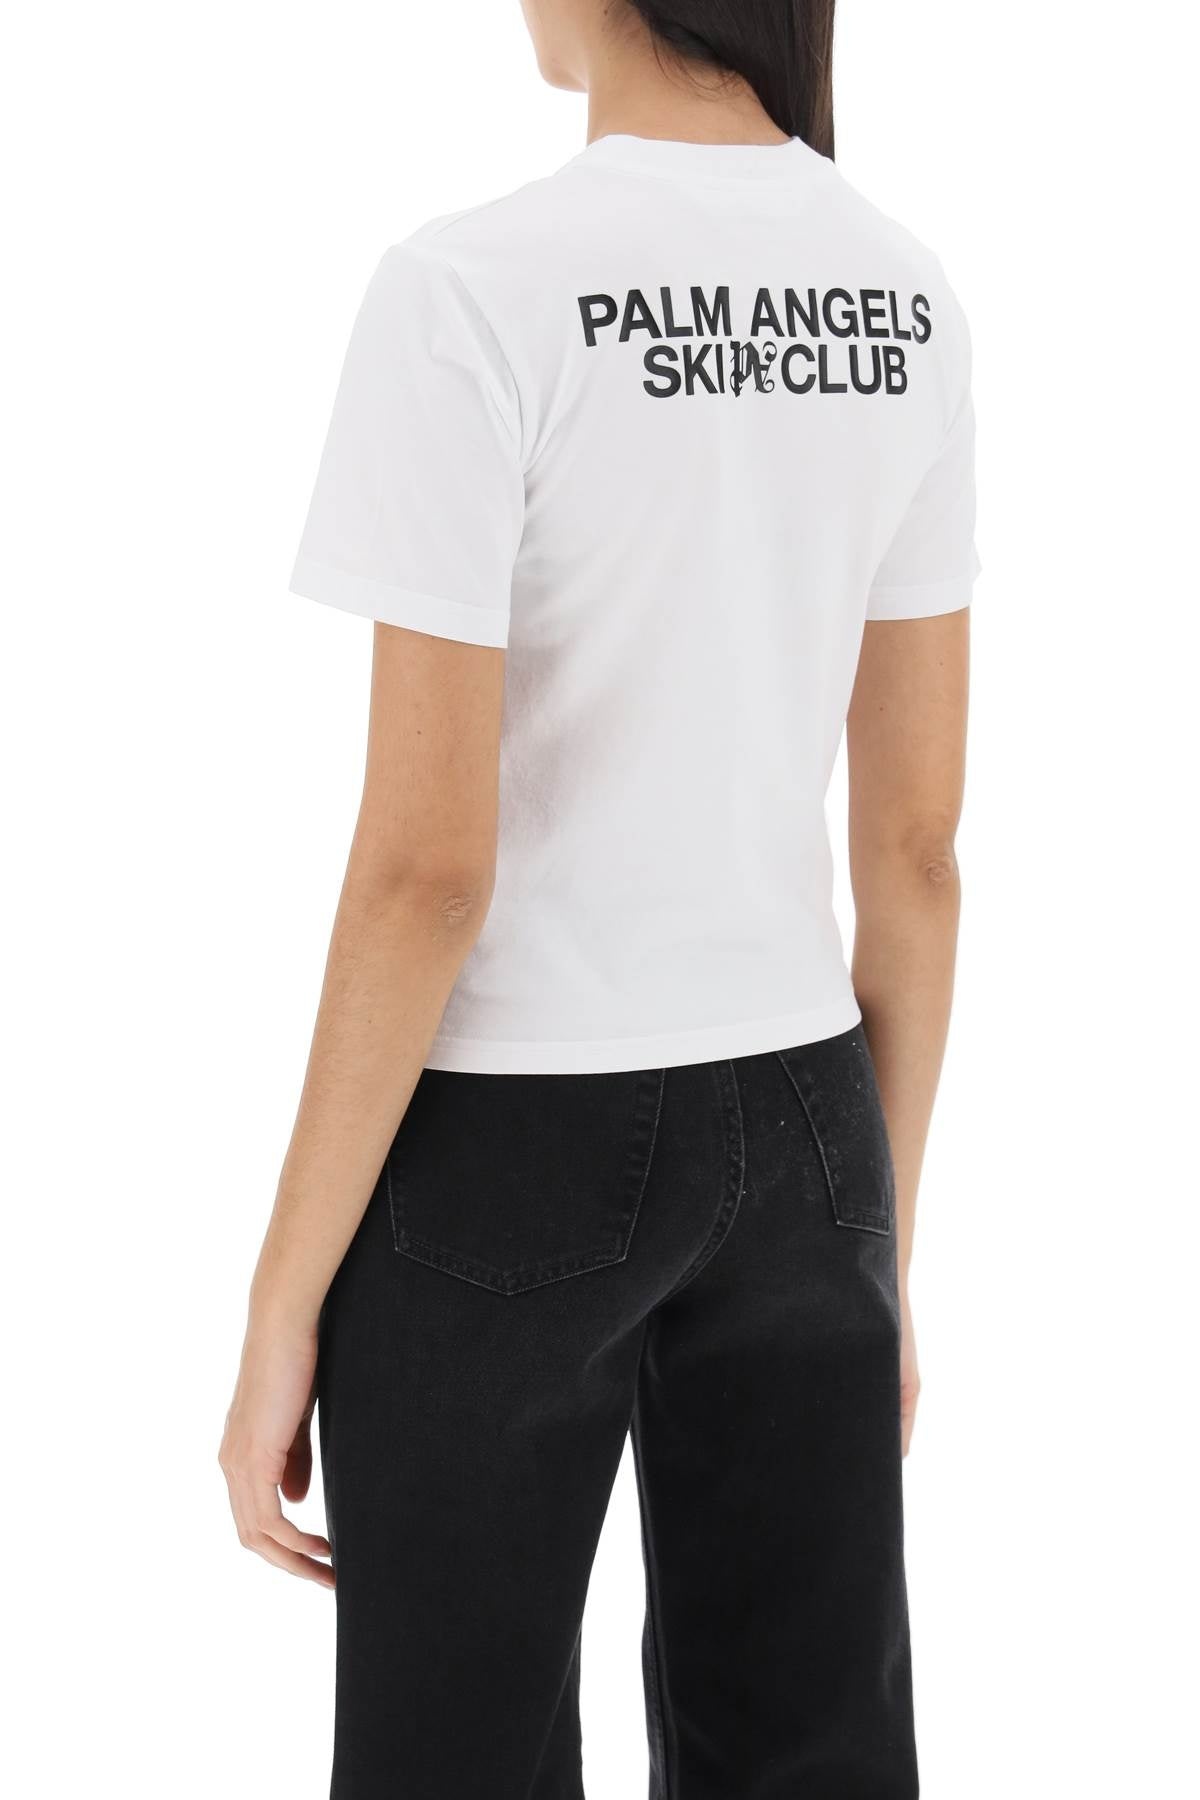 Palm Angels Ski Club T Shirt - 4